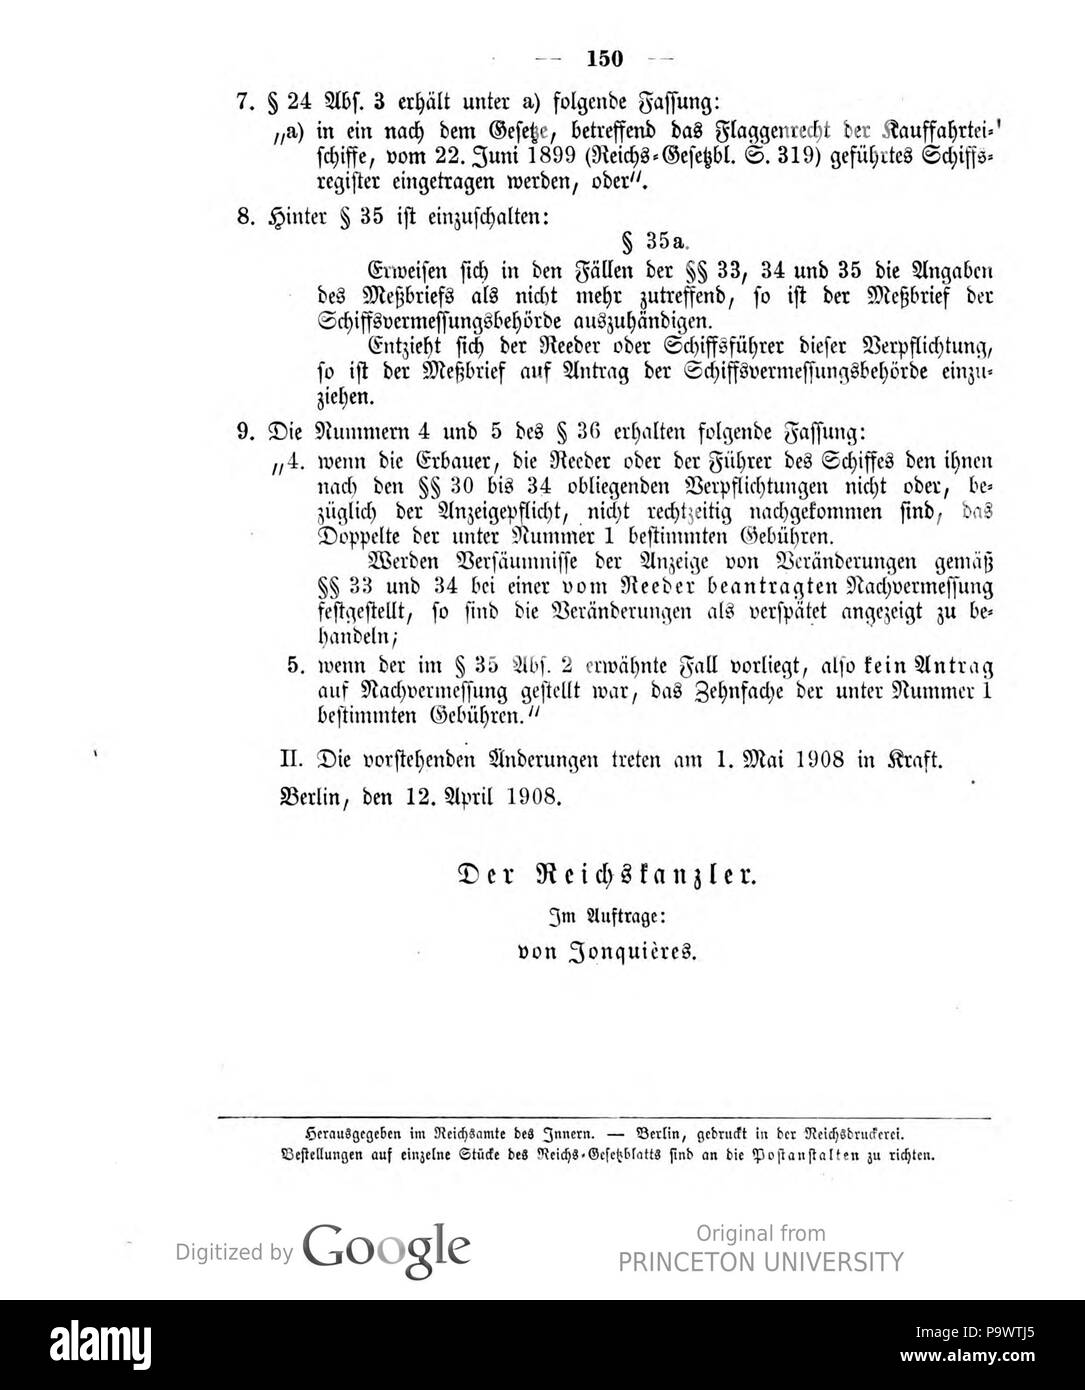 427 Deutsches Reichsgesetzblatt 1908 017 150 Stock Photo